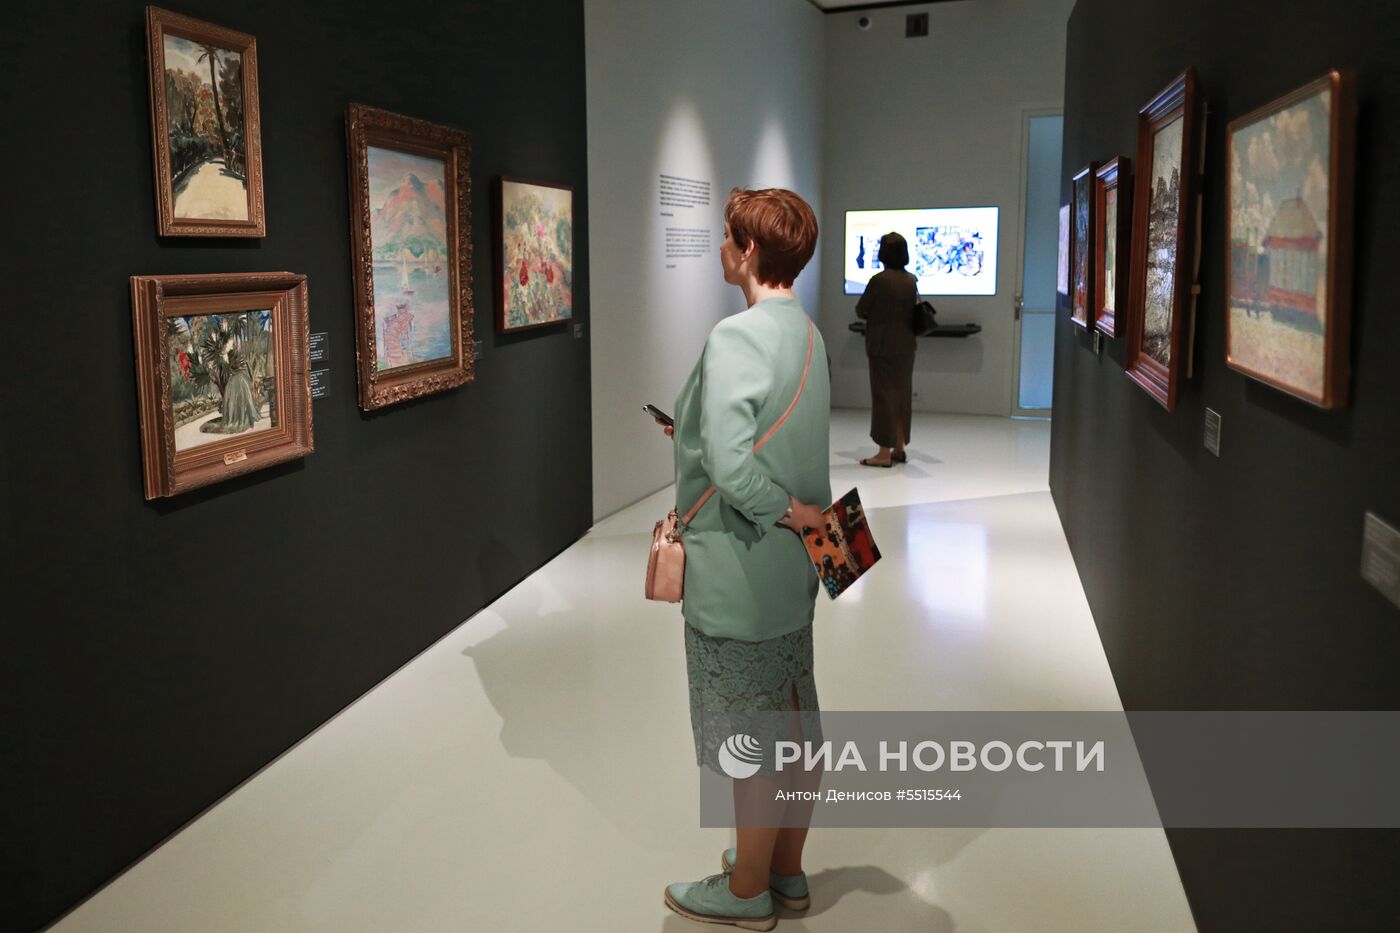 Открытие выставки "Импрессионизм в авангарде" в Музее русского импрессионизма